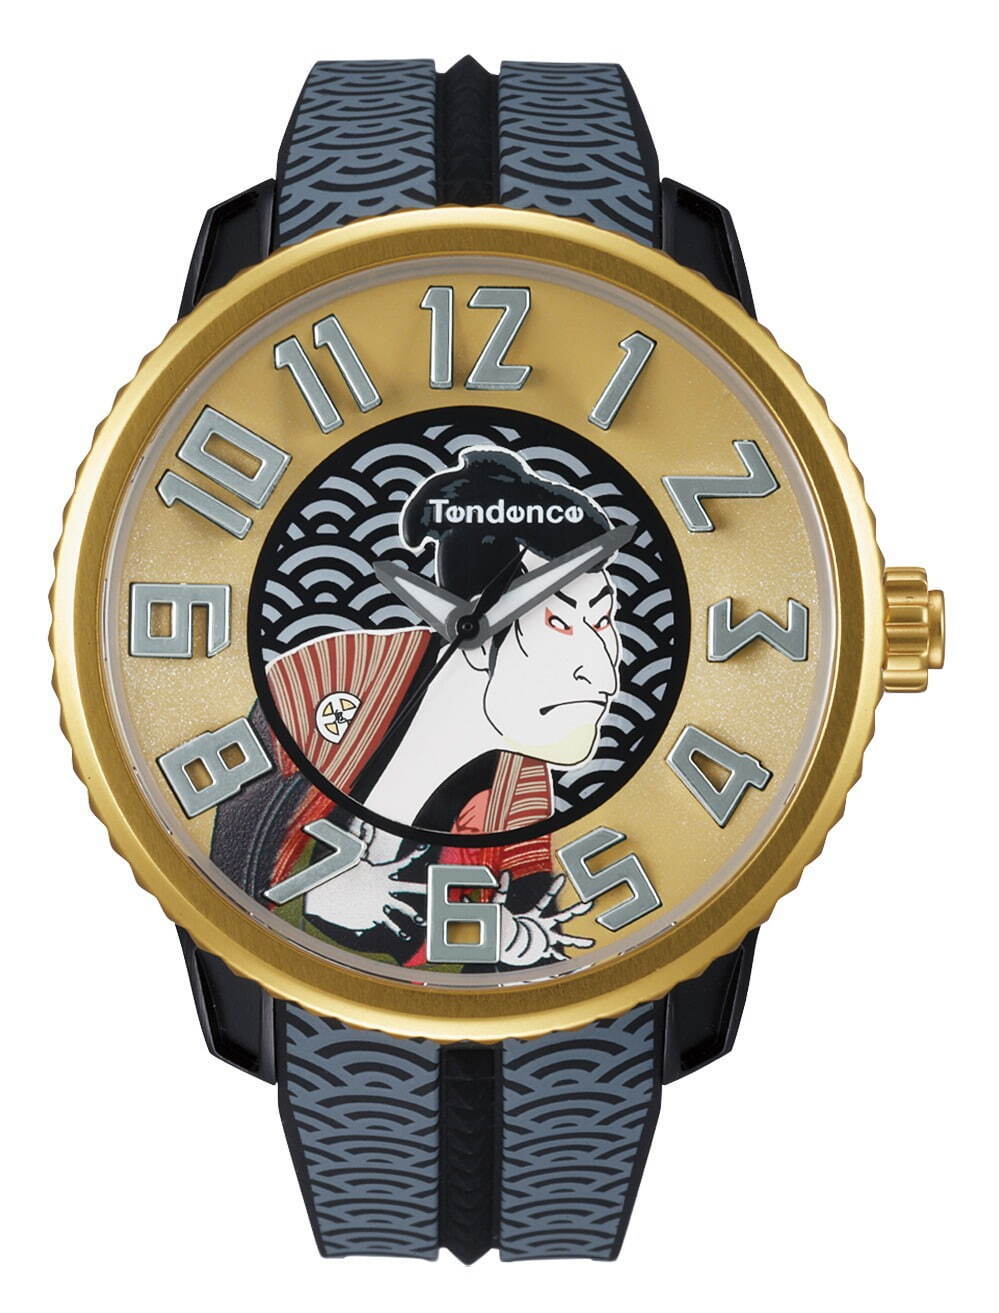 テンデンス新作腕時計「ジャパンアイコン」葛飾北斎『冨嶽三十六景』や